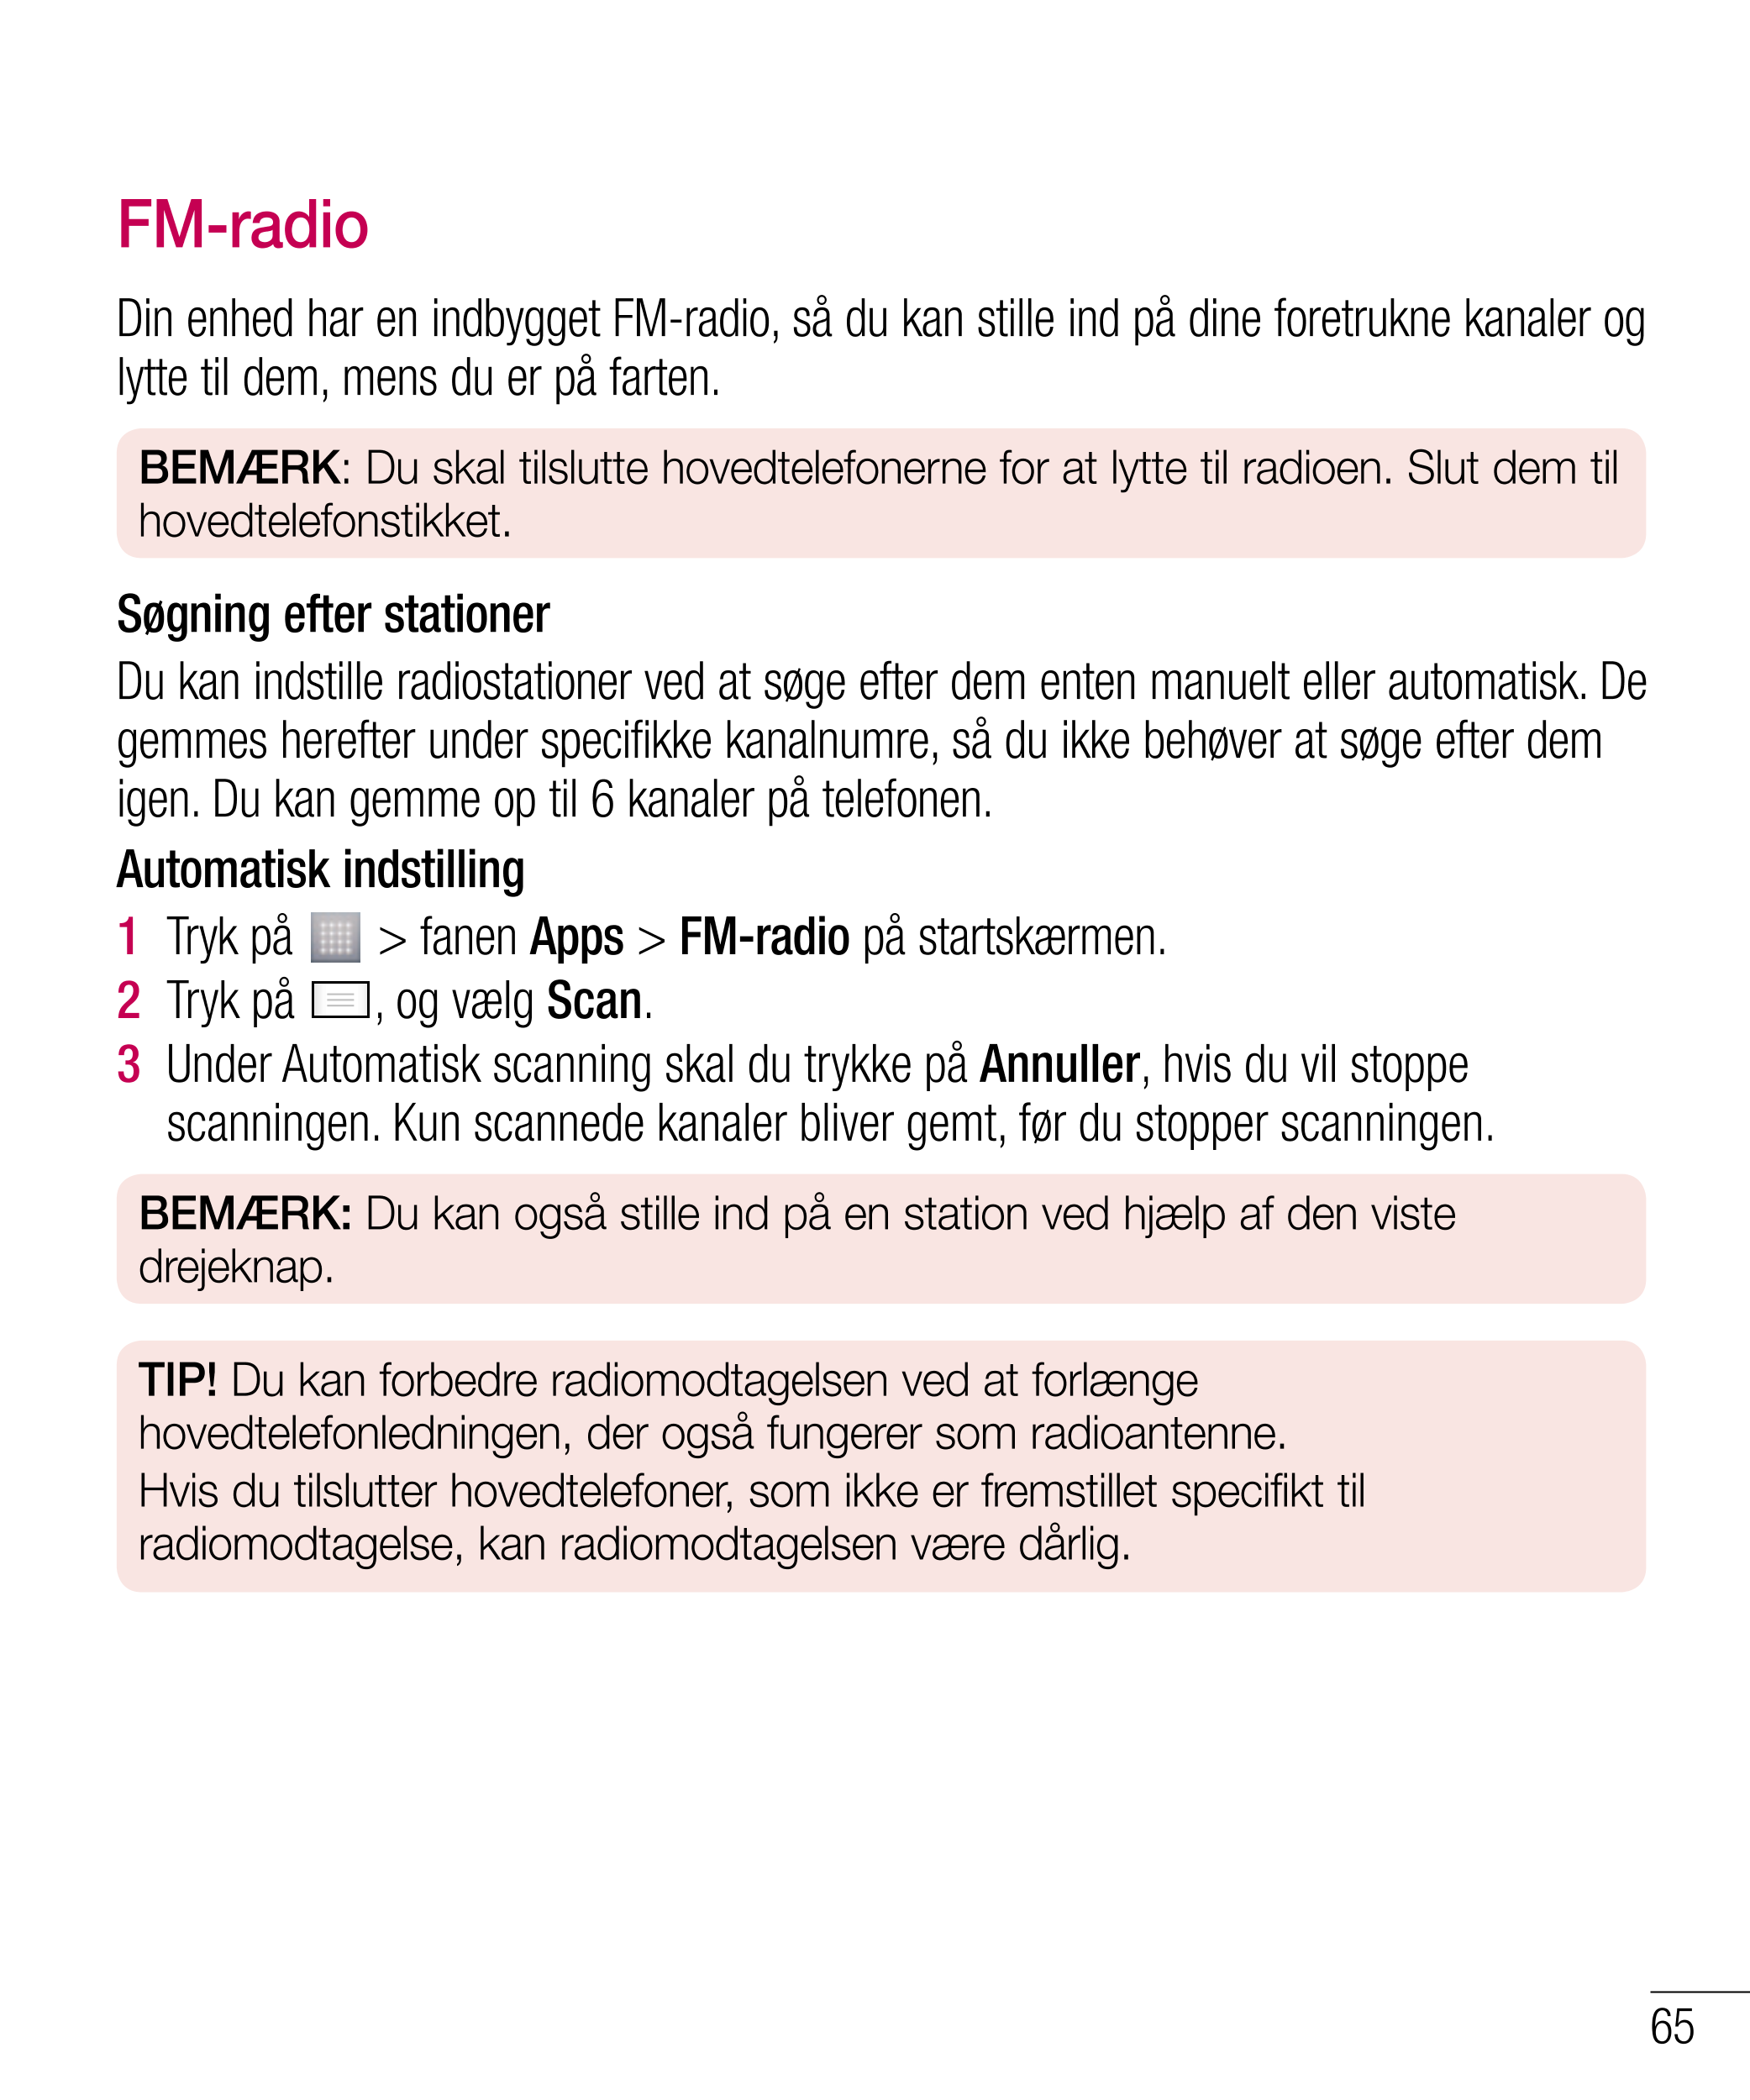 FM-radio
Din enhed har en indbygget FM-radio, så du kan stille ind på dine foretrukne kanaler og 
lytte til dem, mens du er på f